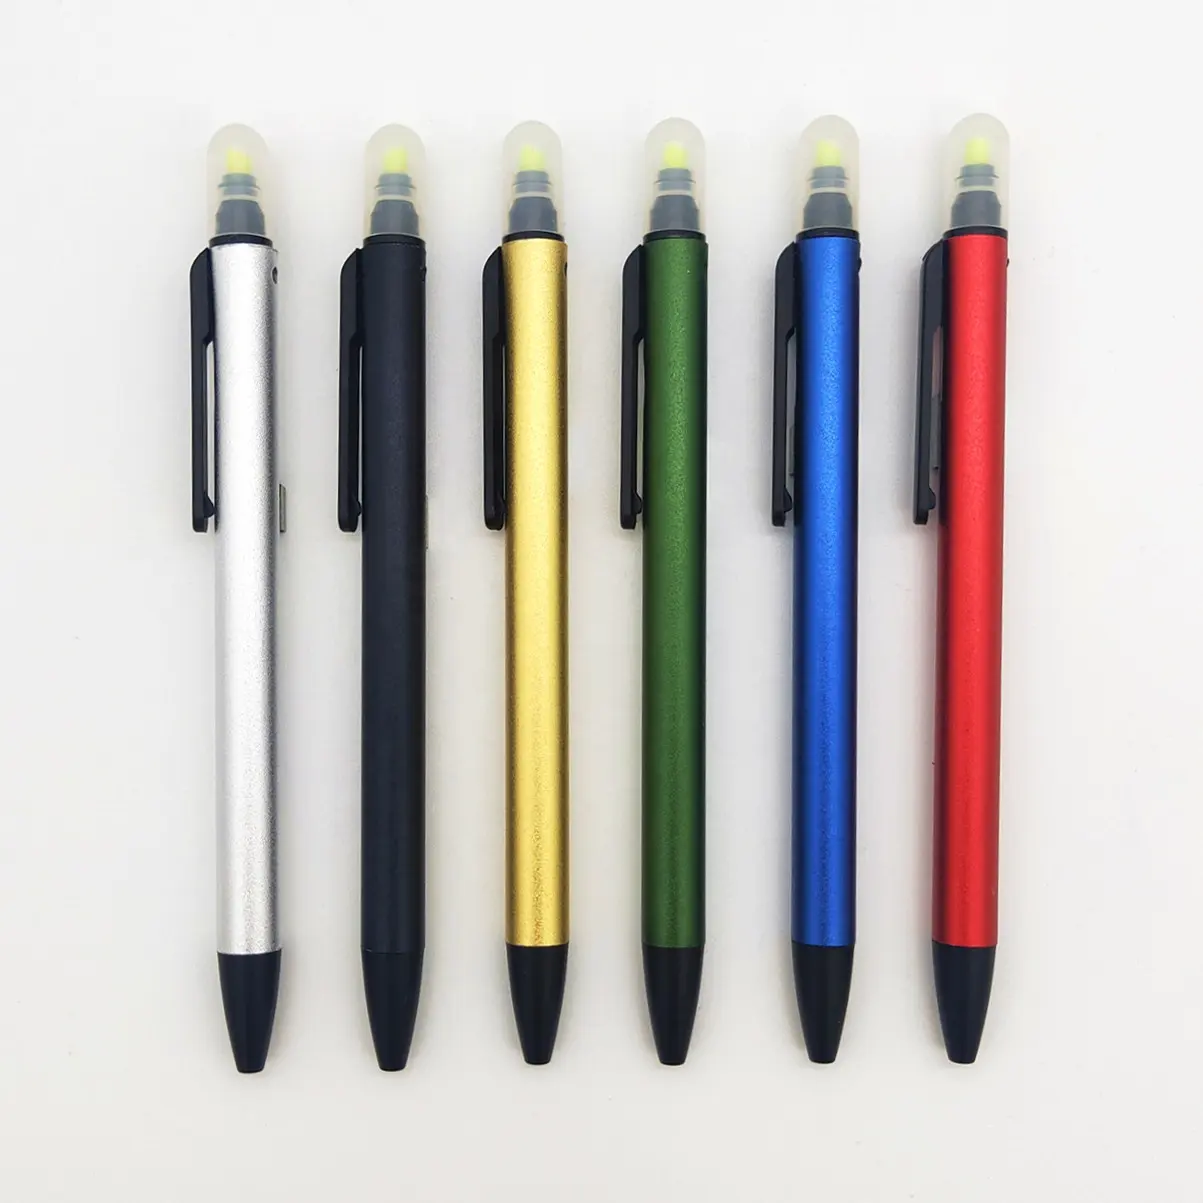 Metal tıklama vurgulayıcı ince tükenmez kalem özel baskı çift ipuçları tükenmez kalem renk vurgulayıcı combo çok renkli kalem